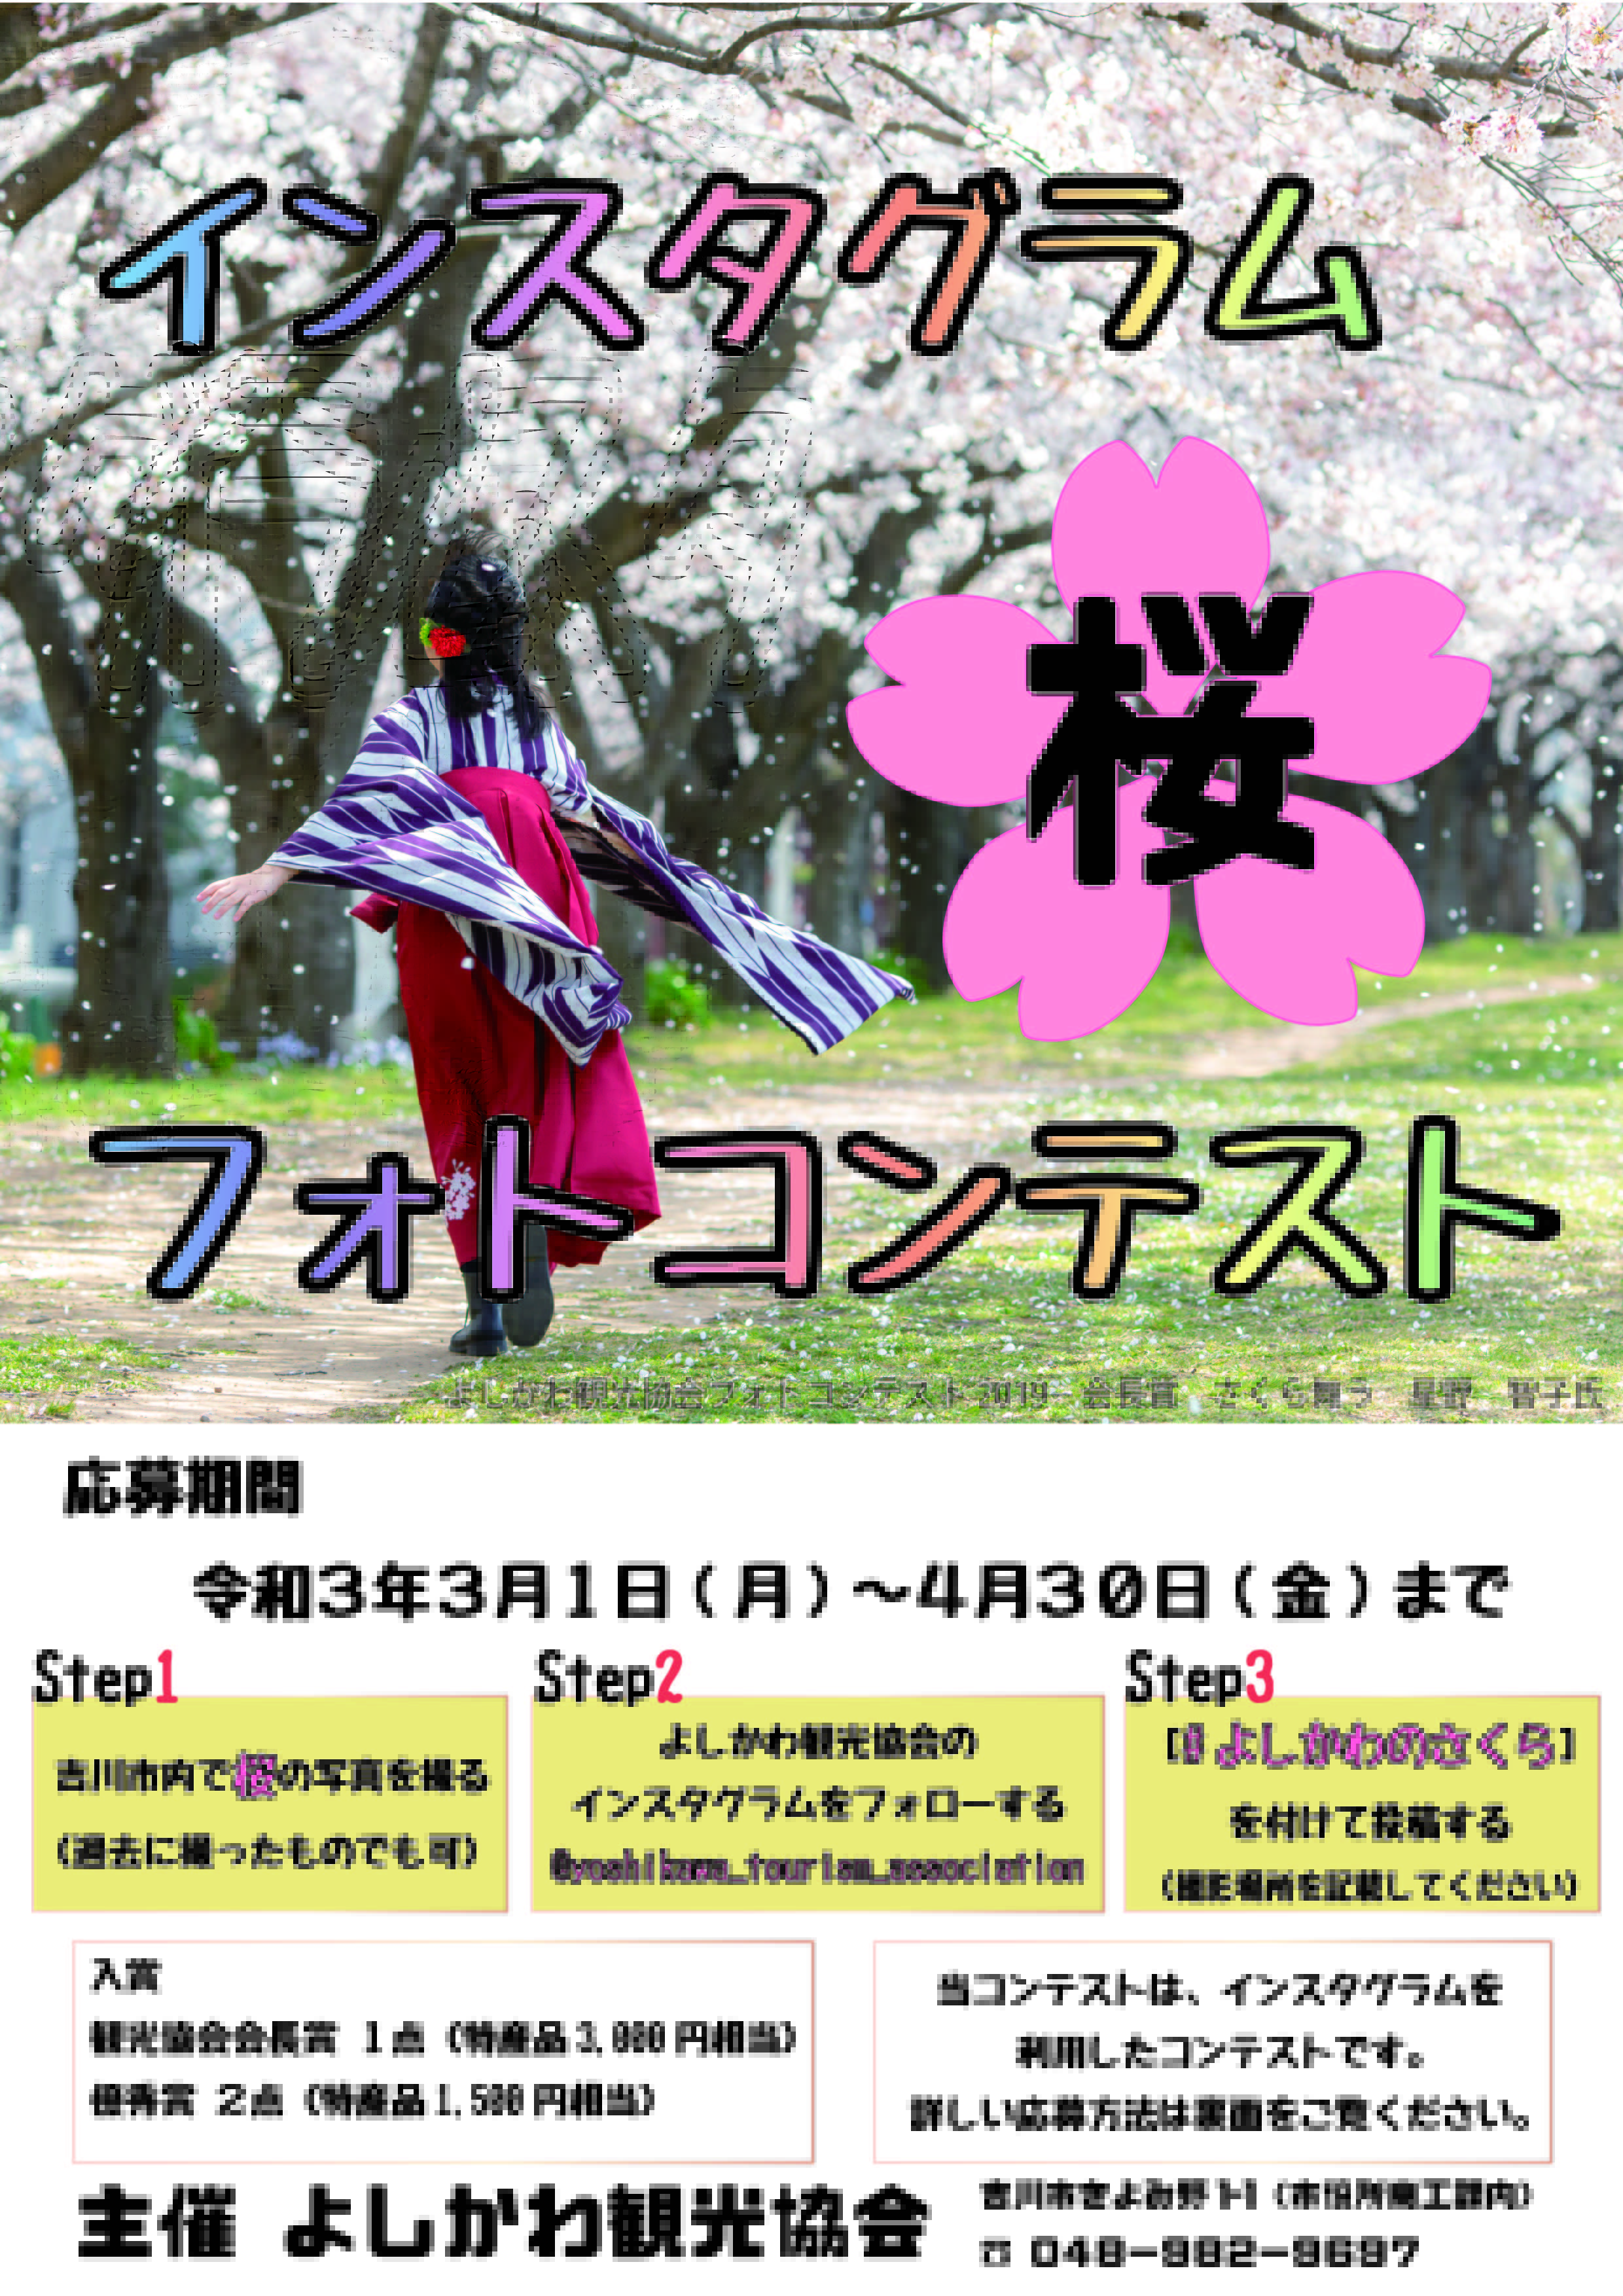 インスタグラム桜フォトコンテストポスター